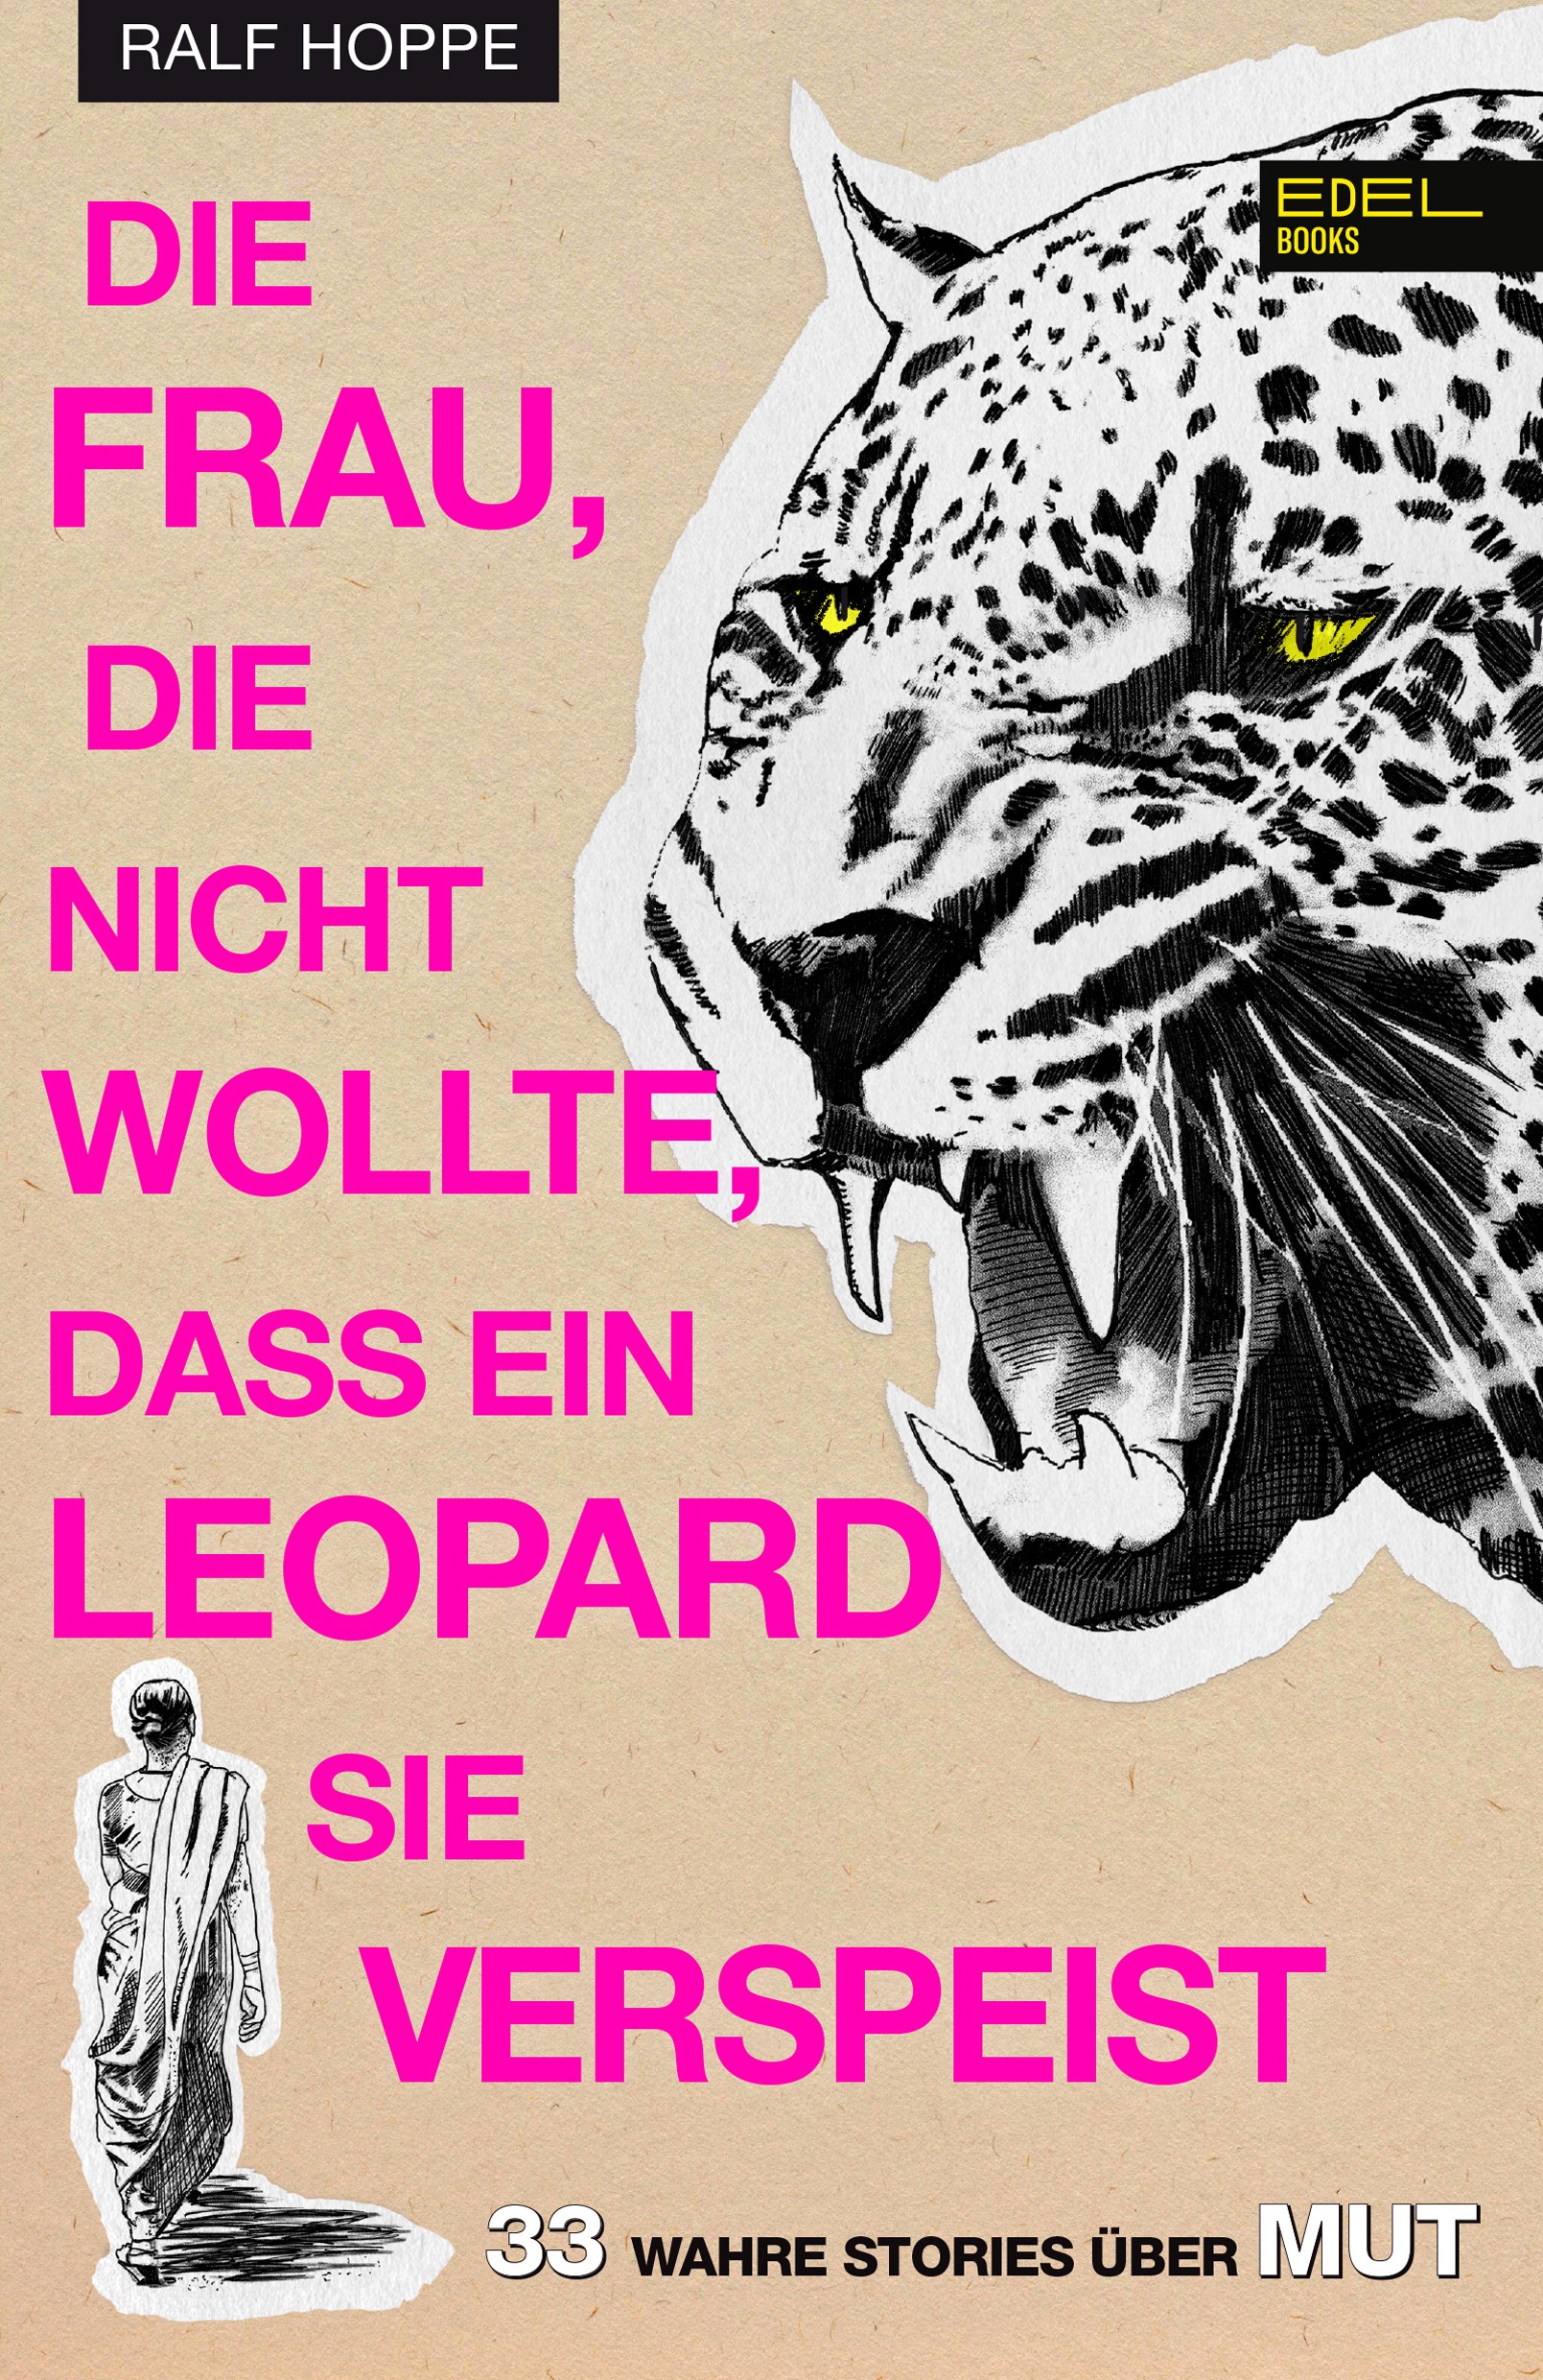 Ralf Hoppe: Die Frau, die nicht wollte, dass ein Leopard sie verspeist